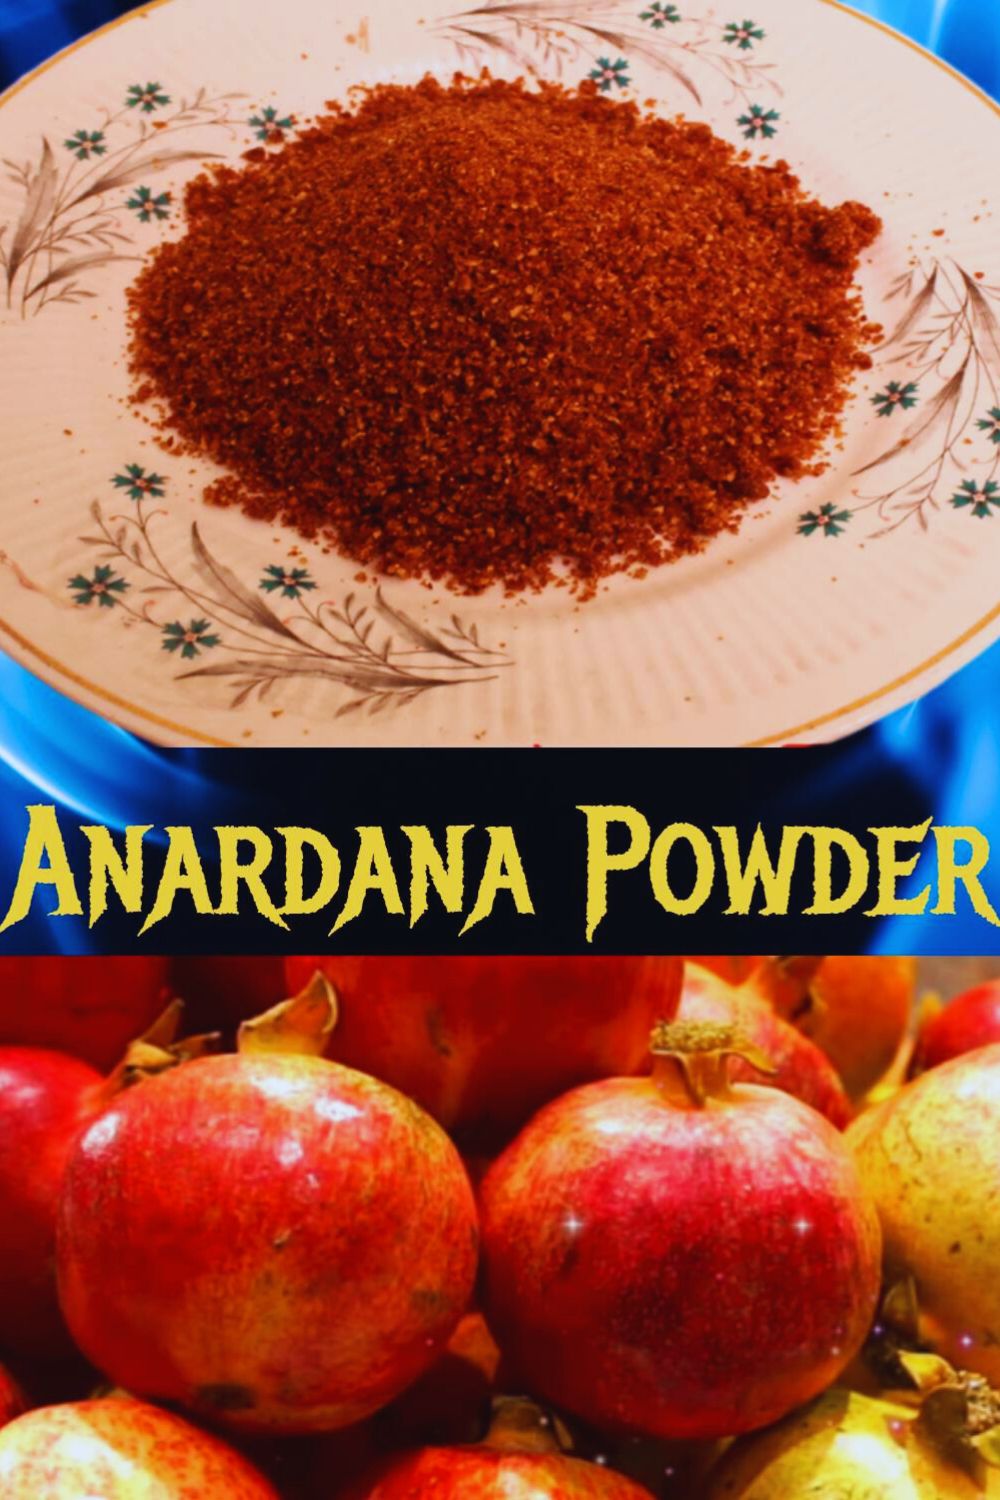 Anardana Powder